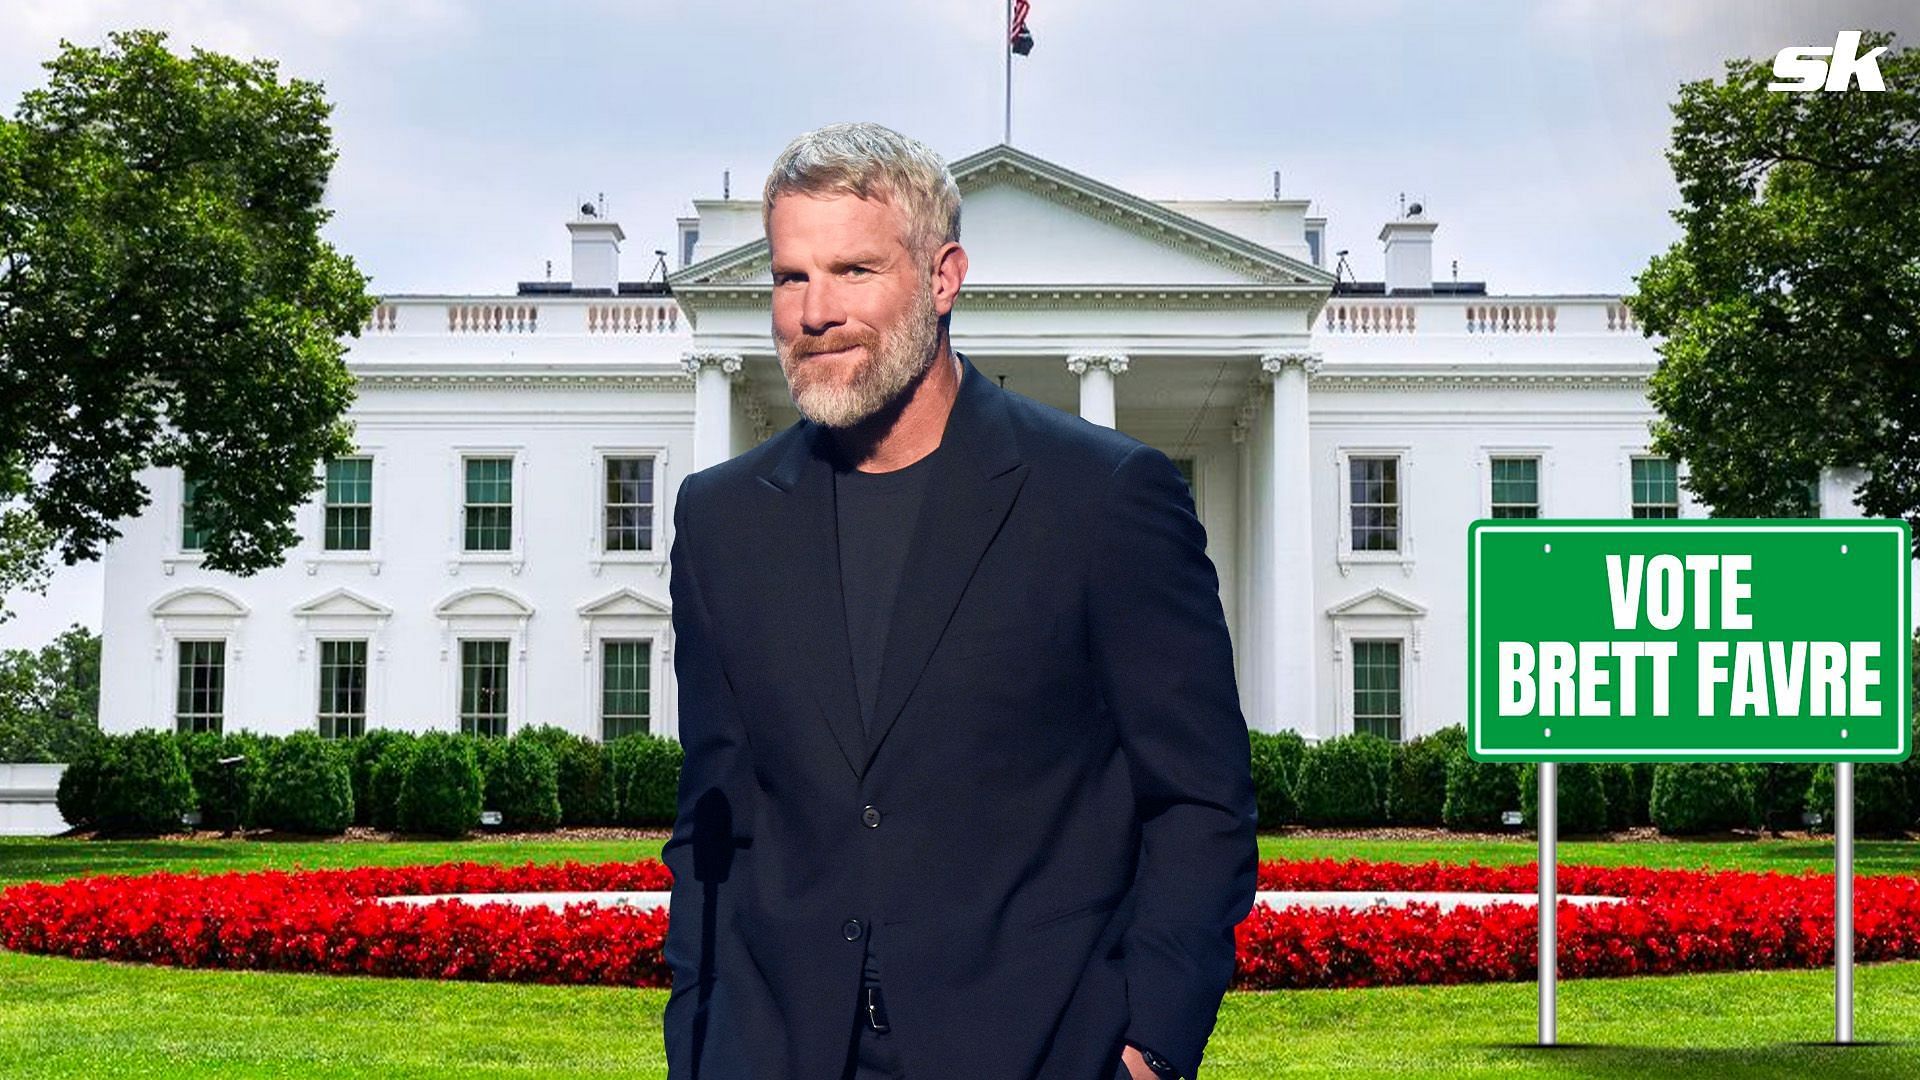 Is Brett Favre running for office?